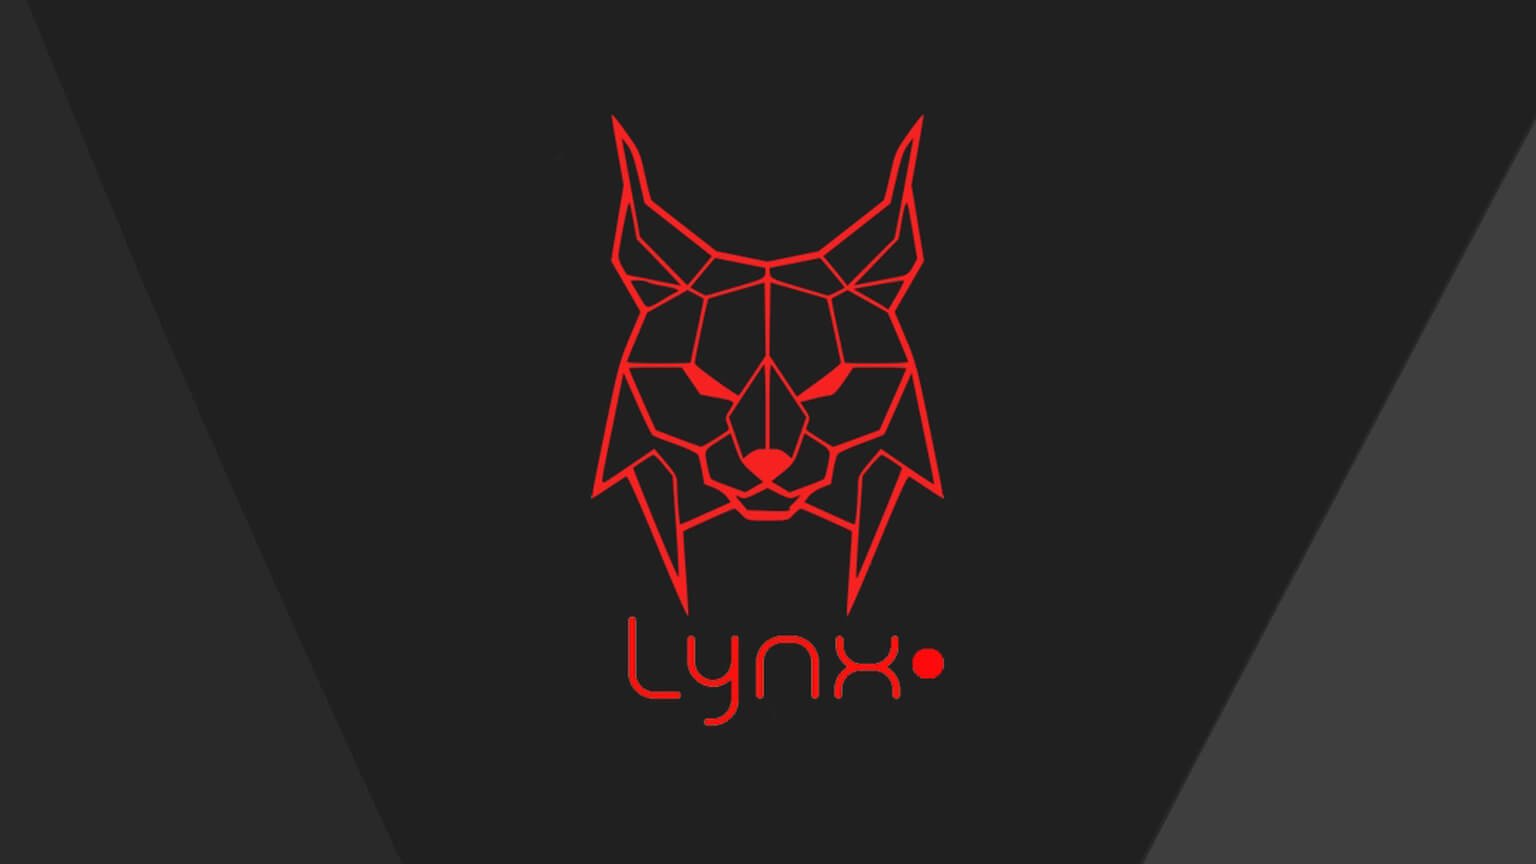 Lynx Remix APK (Lynx-Remix-APK.jpg) Image - 98404458 